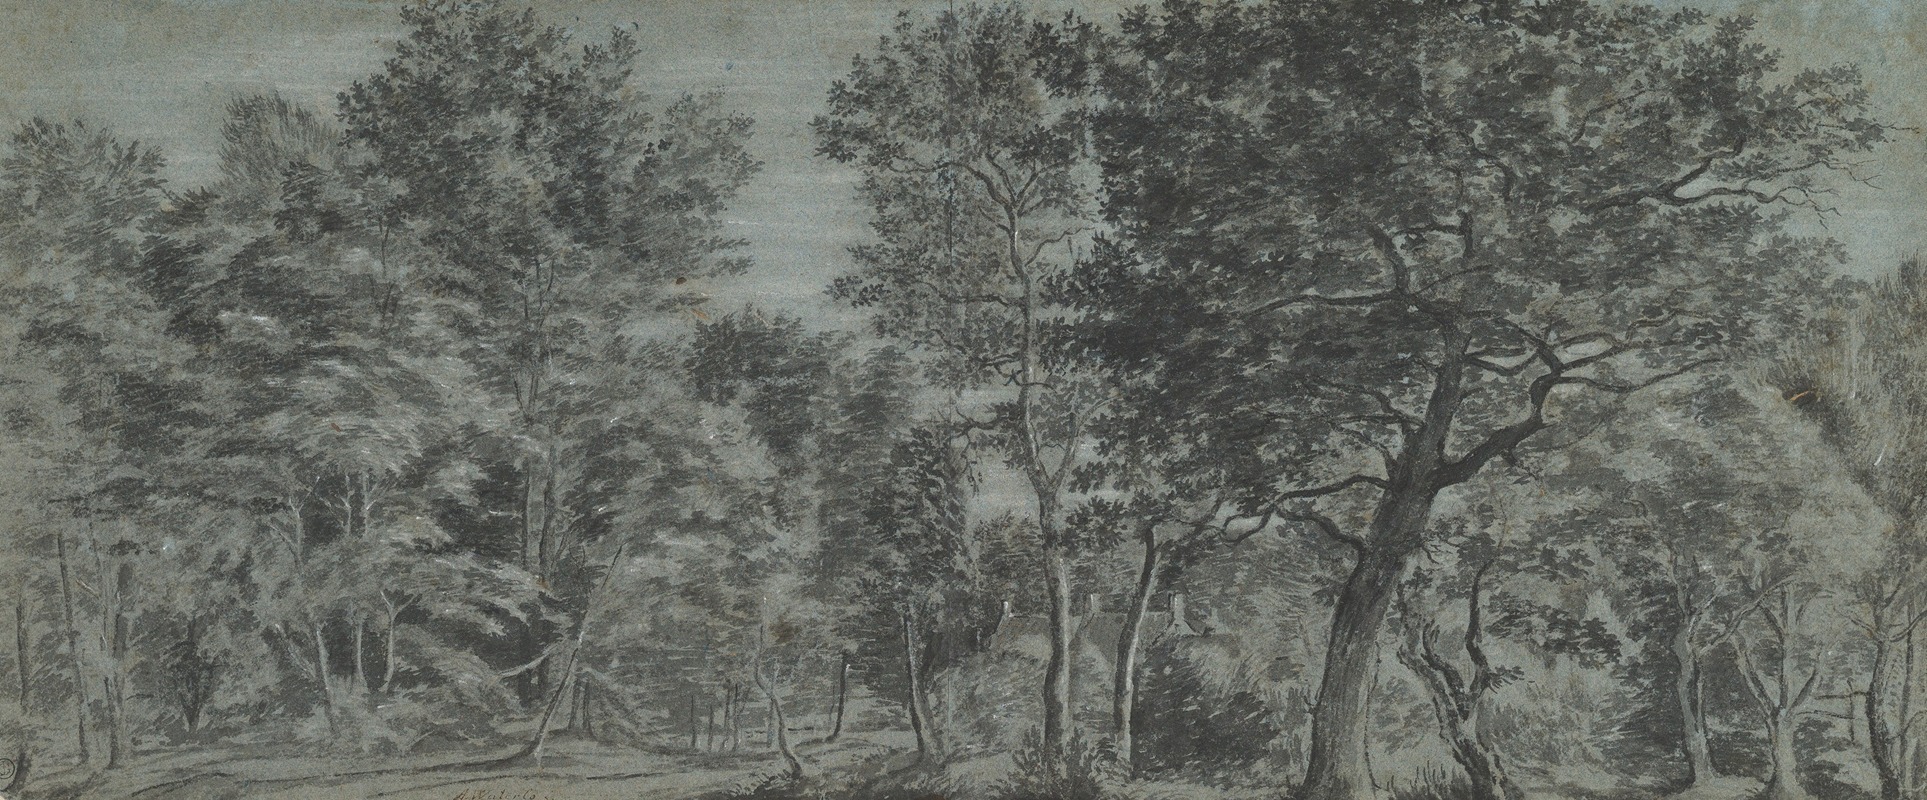 Joris van der Haagen - View of a Forest